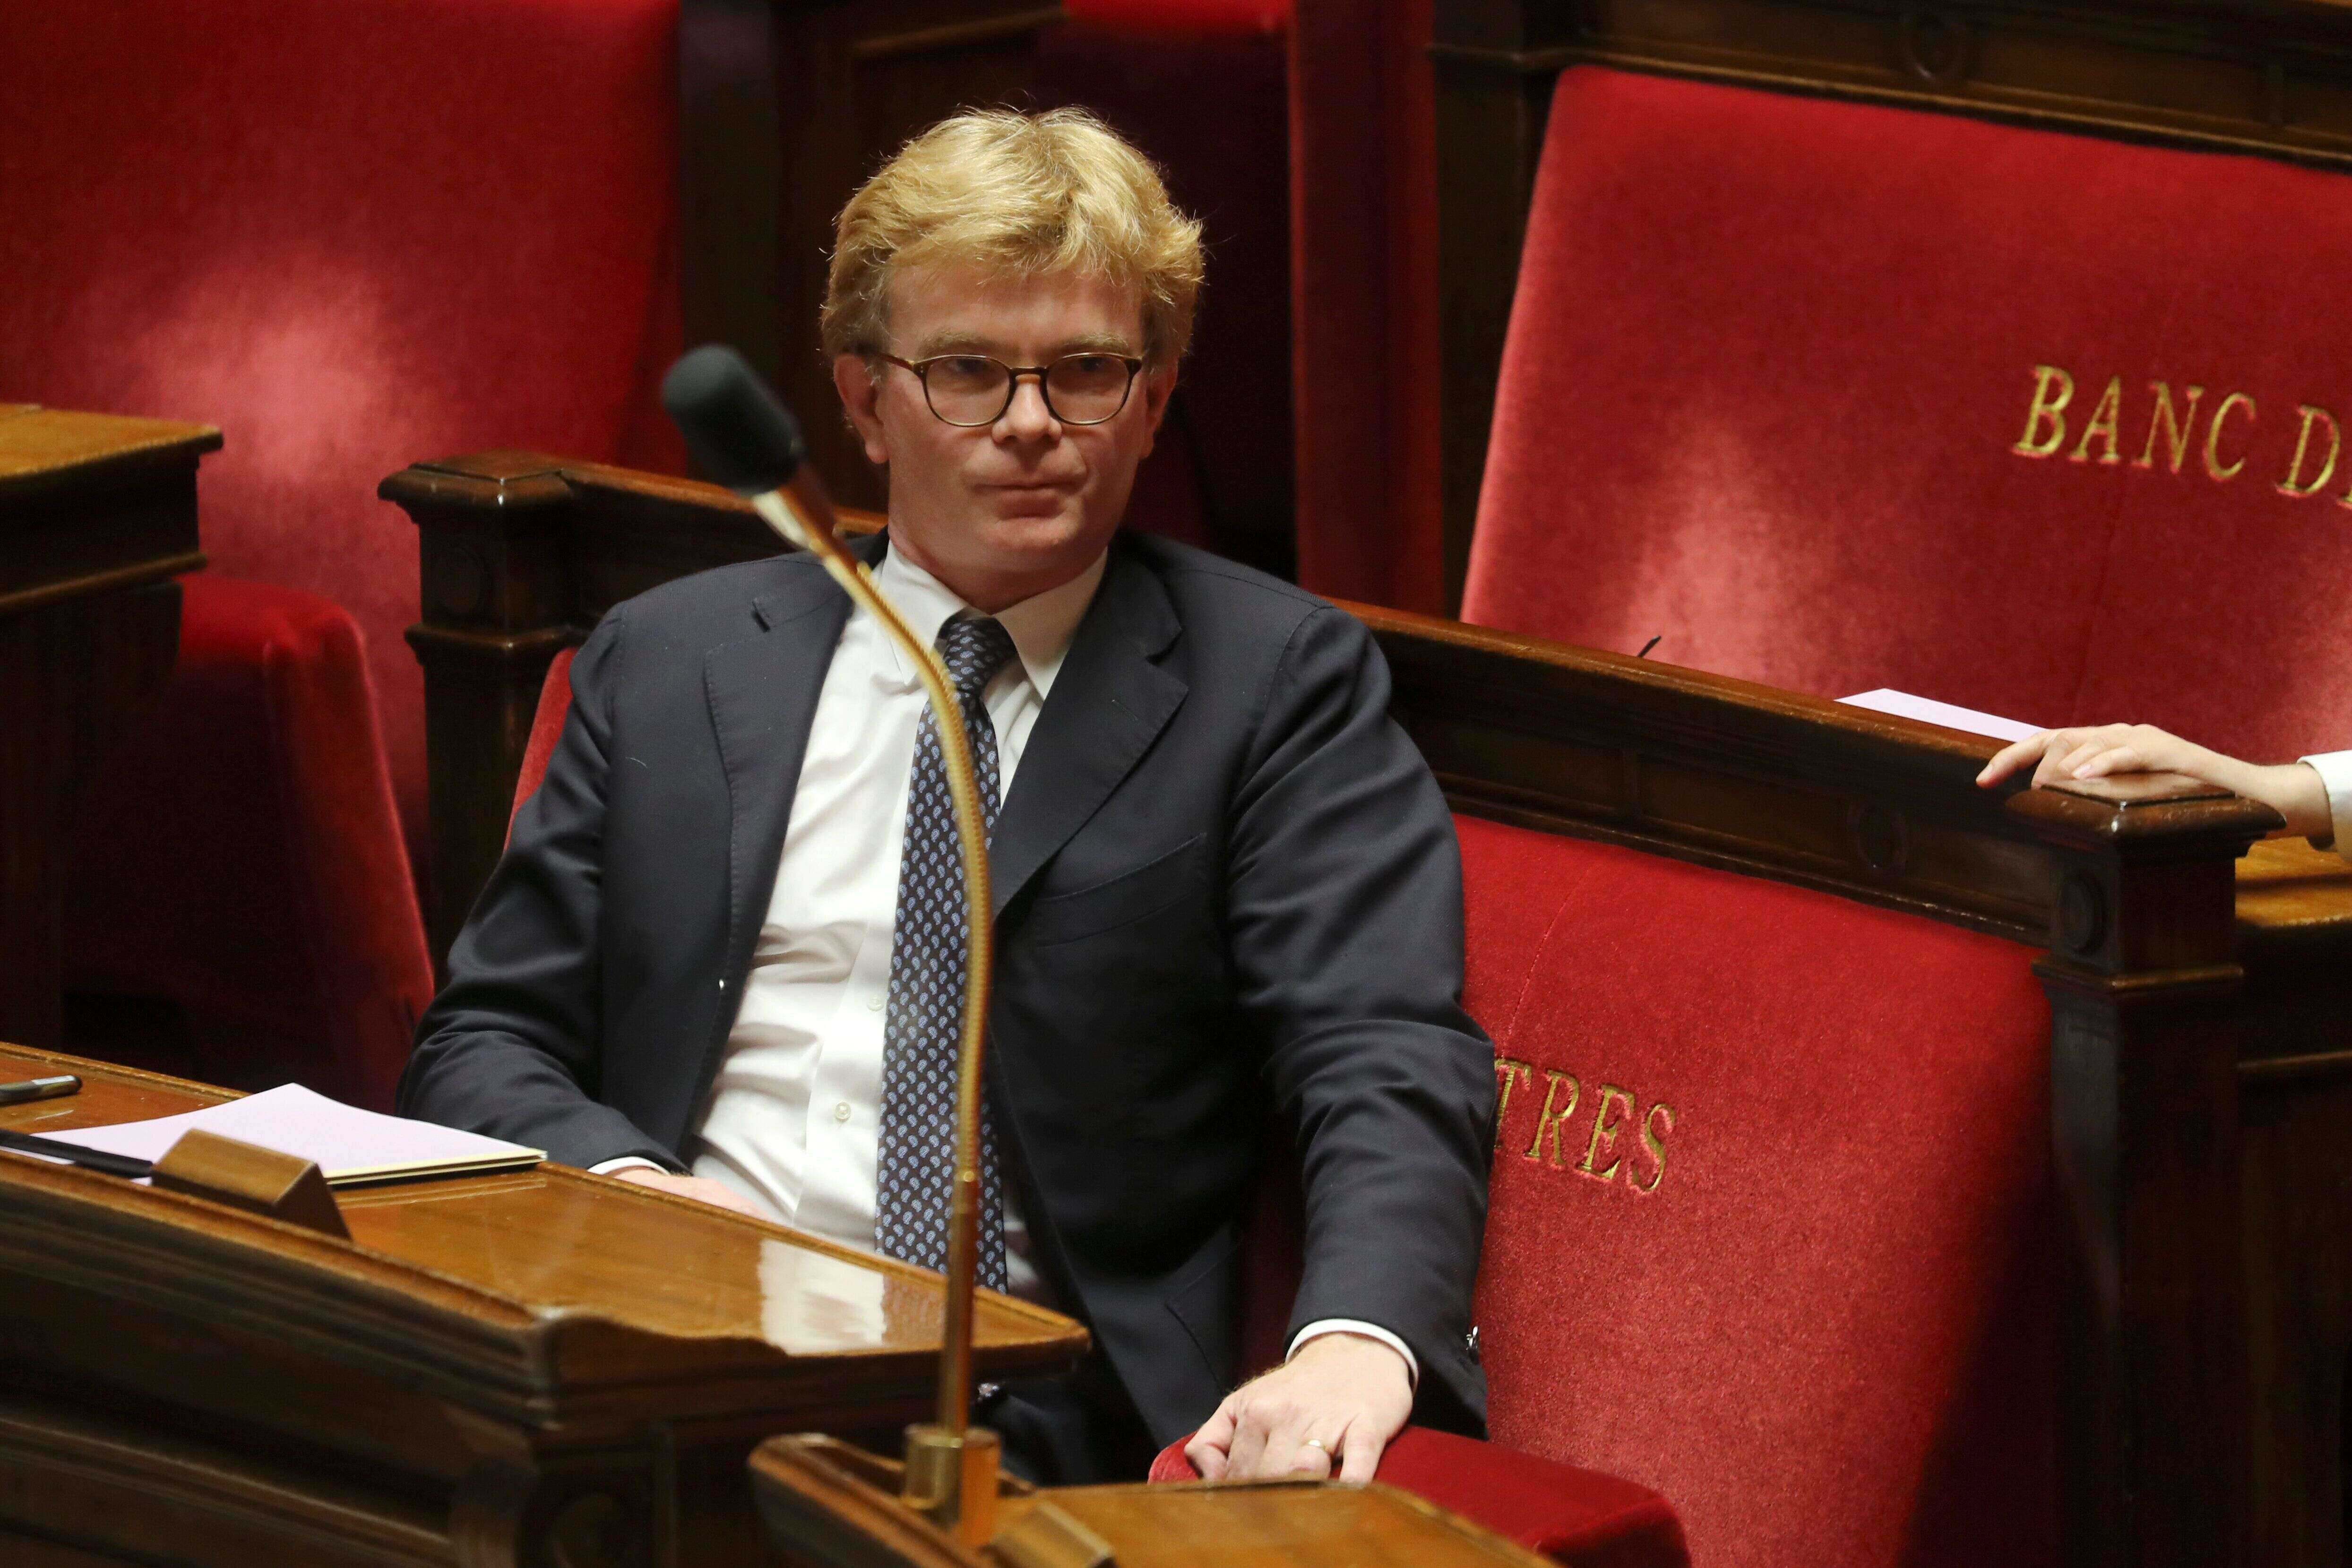 Le ministre des Relations avec le Parlement, Marc Fesneau, en mars 2020 à l'Assemblée nationale. (Ludovic Marin, Pool via AP)